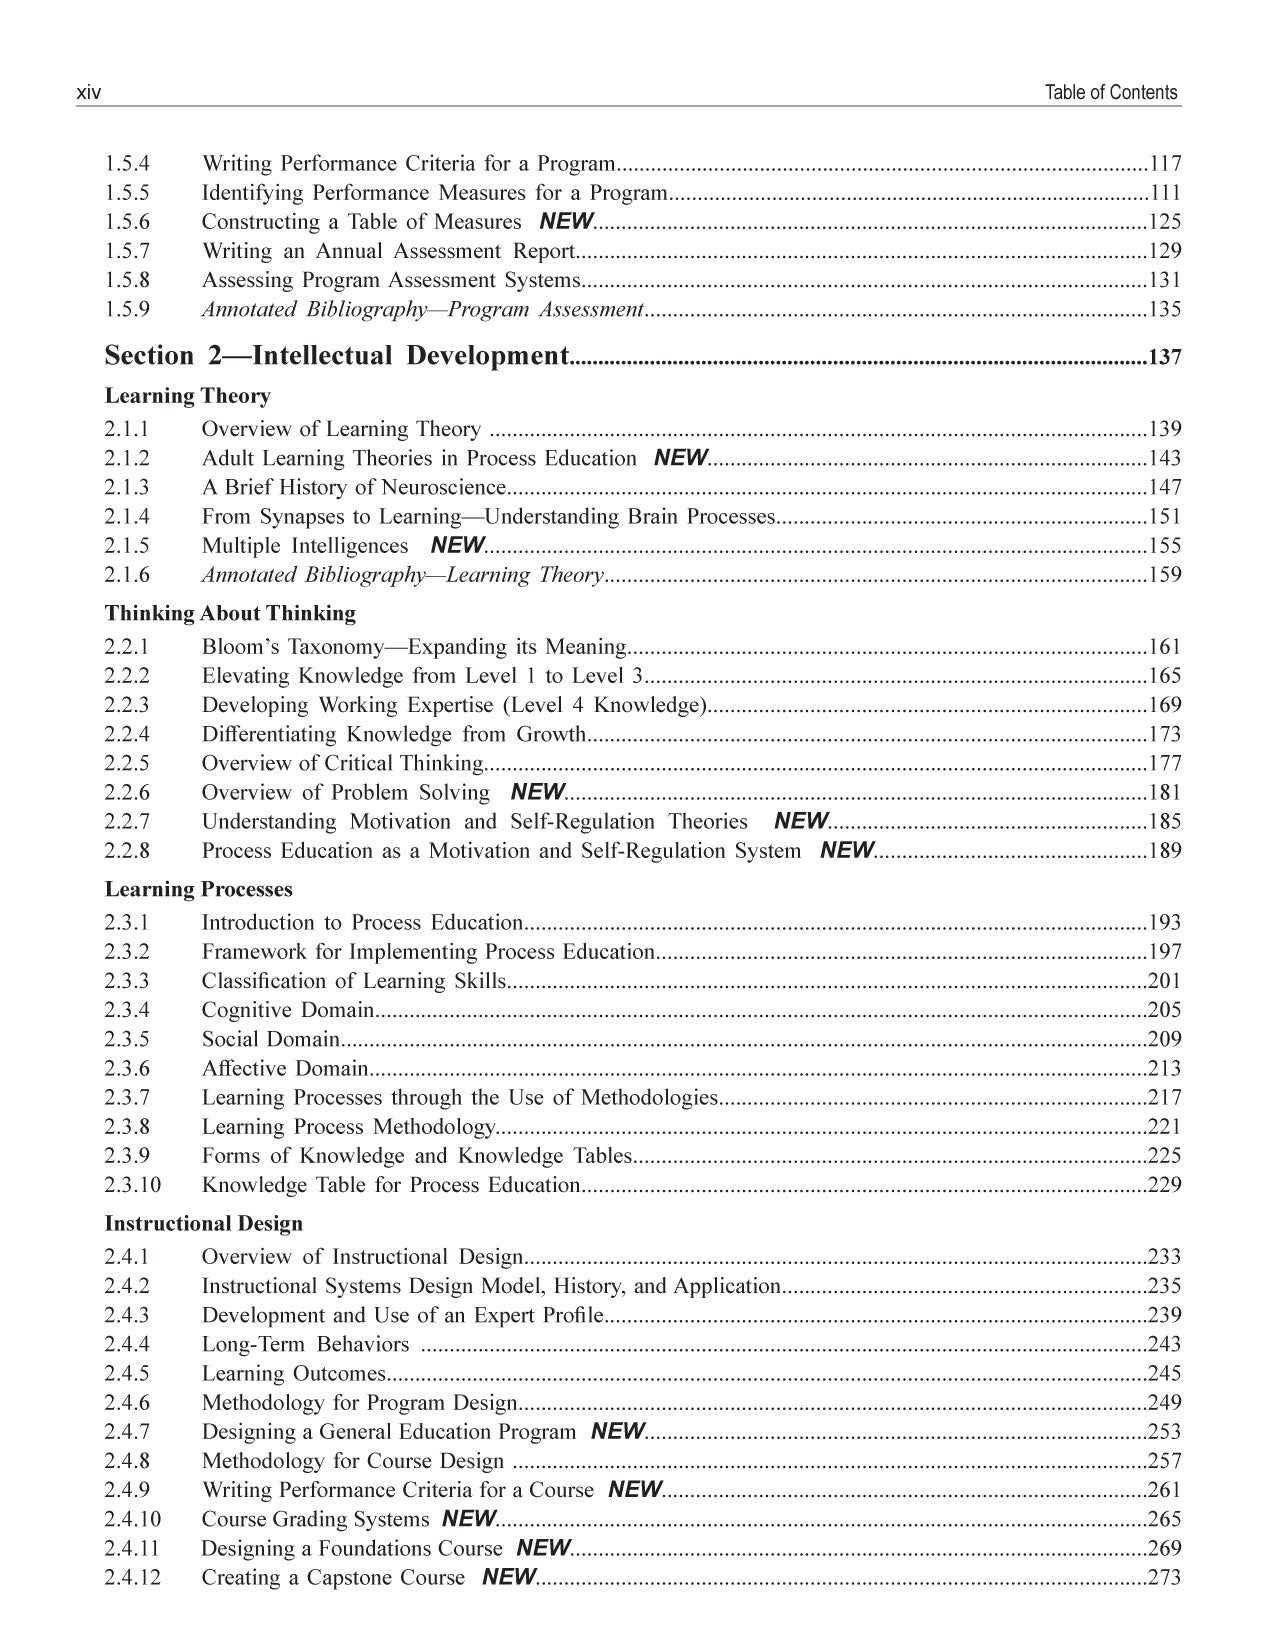 Faculty Guidebook Bundle, 4th Edition